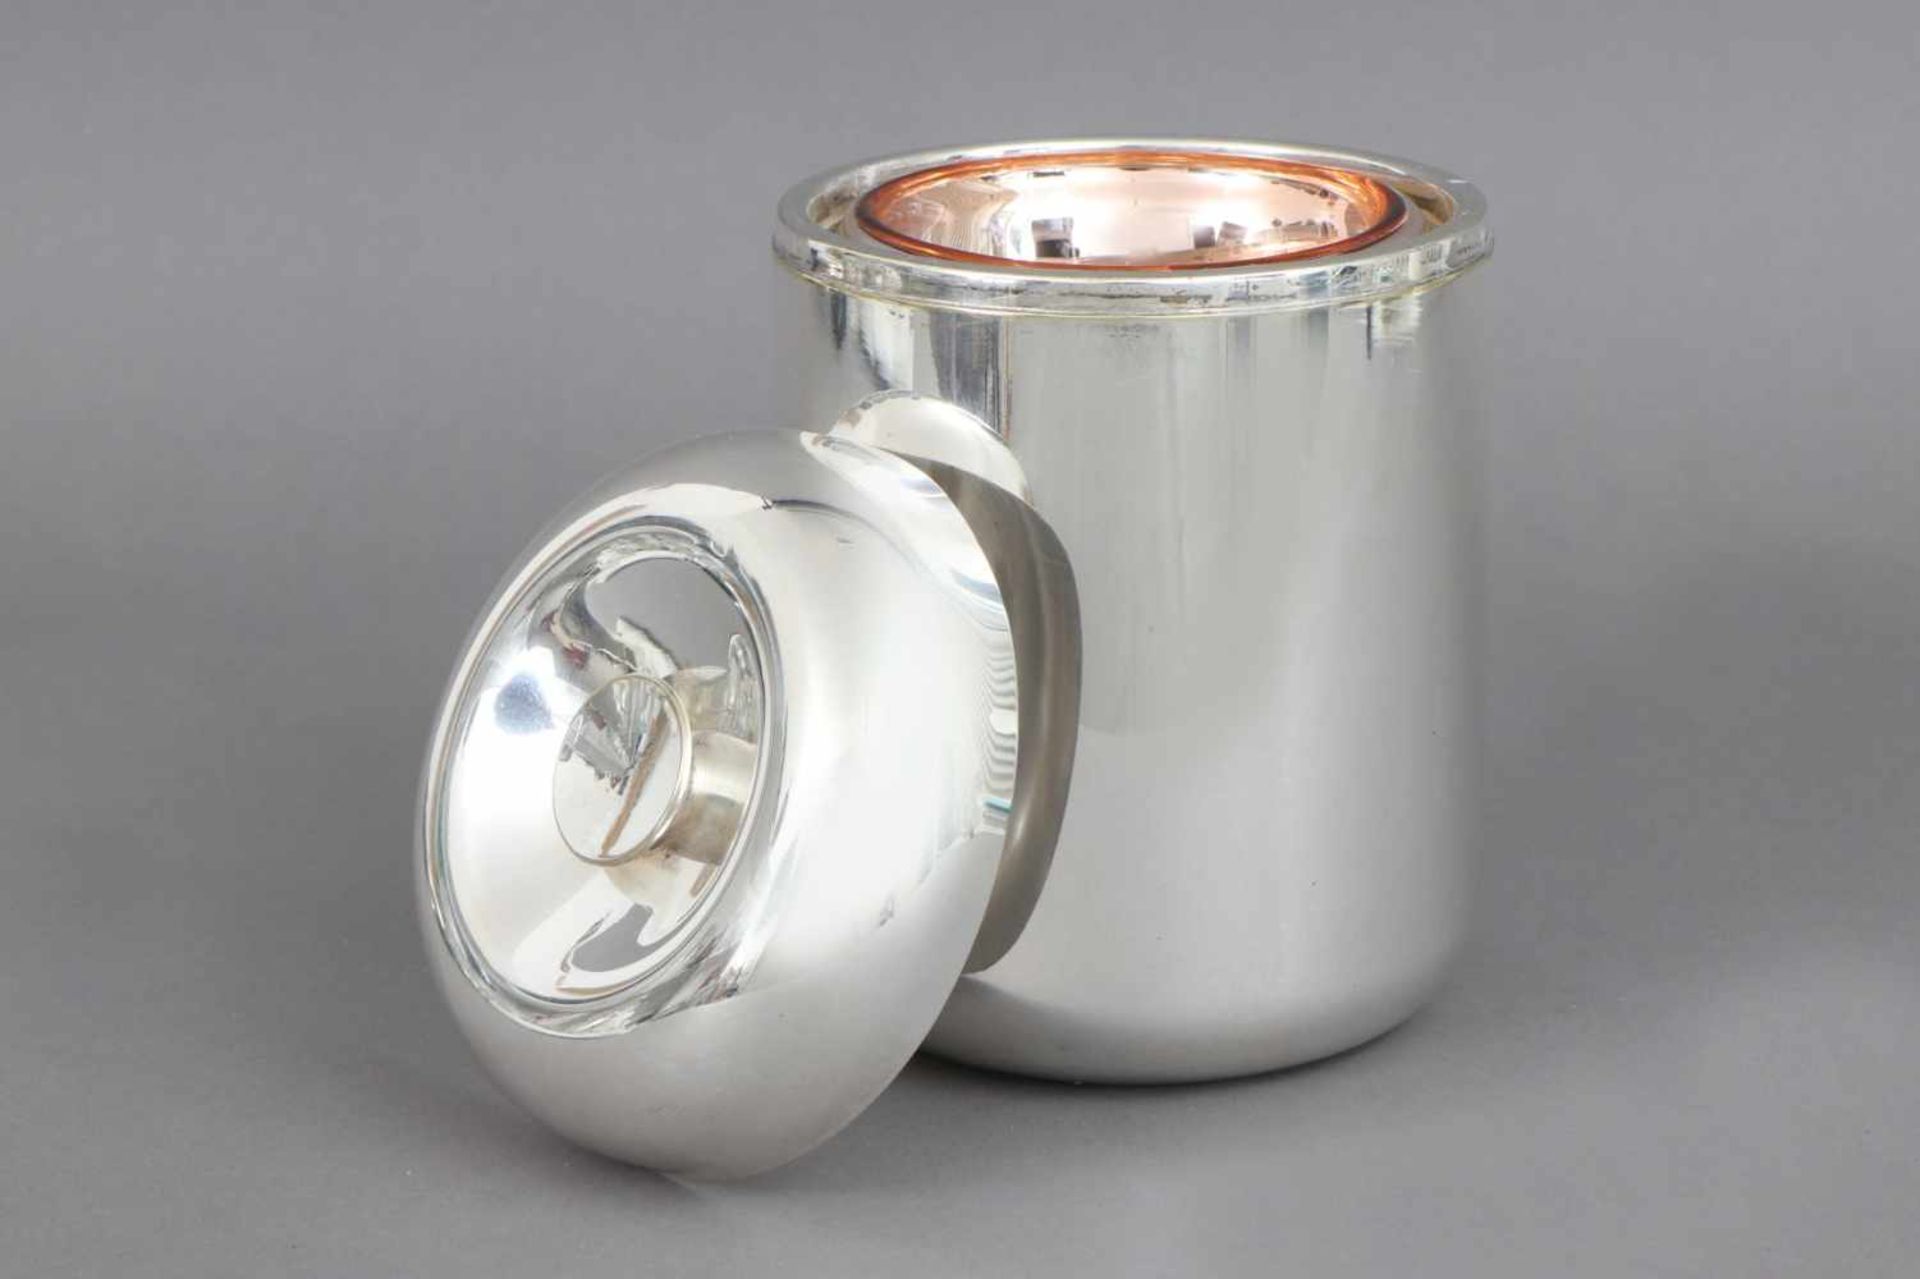 Ice-bucket CUSANO MILANINOMetall, versilbert, zylindrisches Gefäß mit aufgestecktem Deckel, im - Image 2 of 2